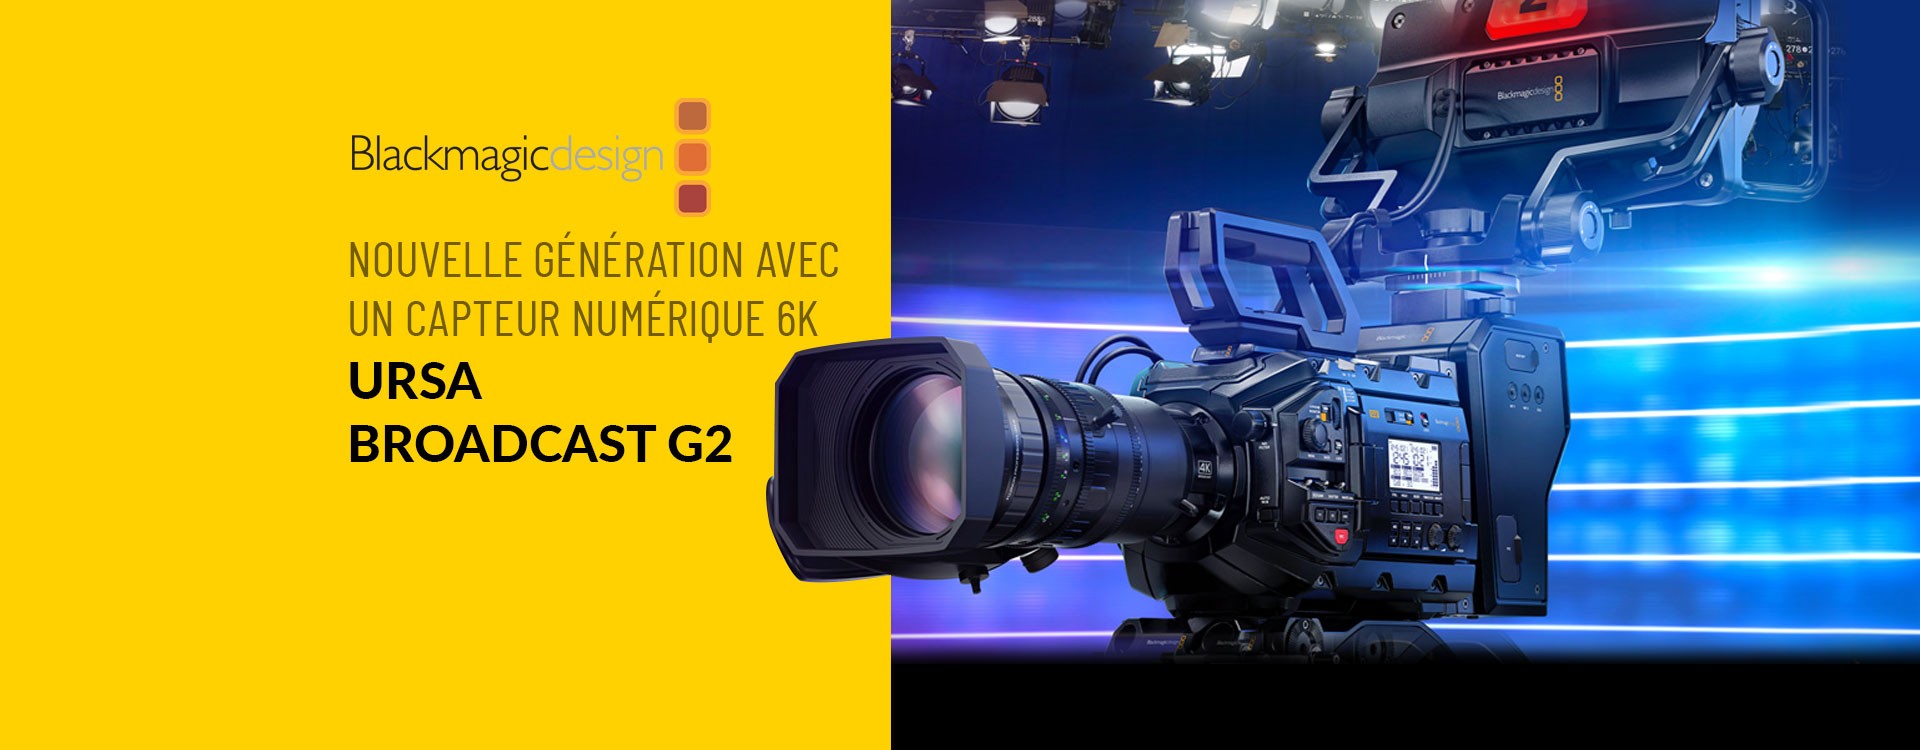 Blackmagic Design annonce la sortie de la nouvelle Blackmagic URSA Broadcast G2